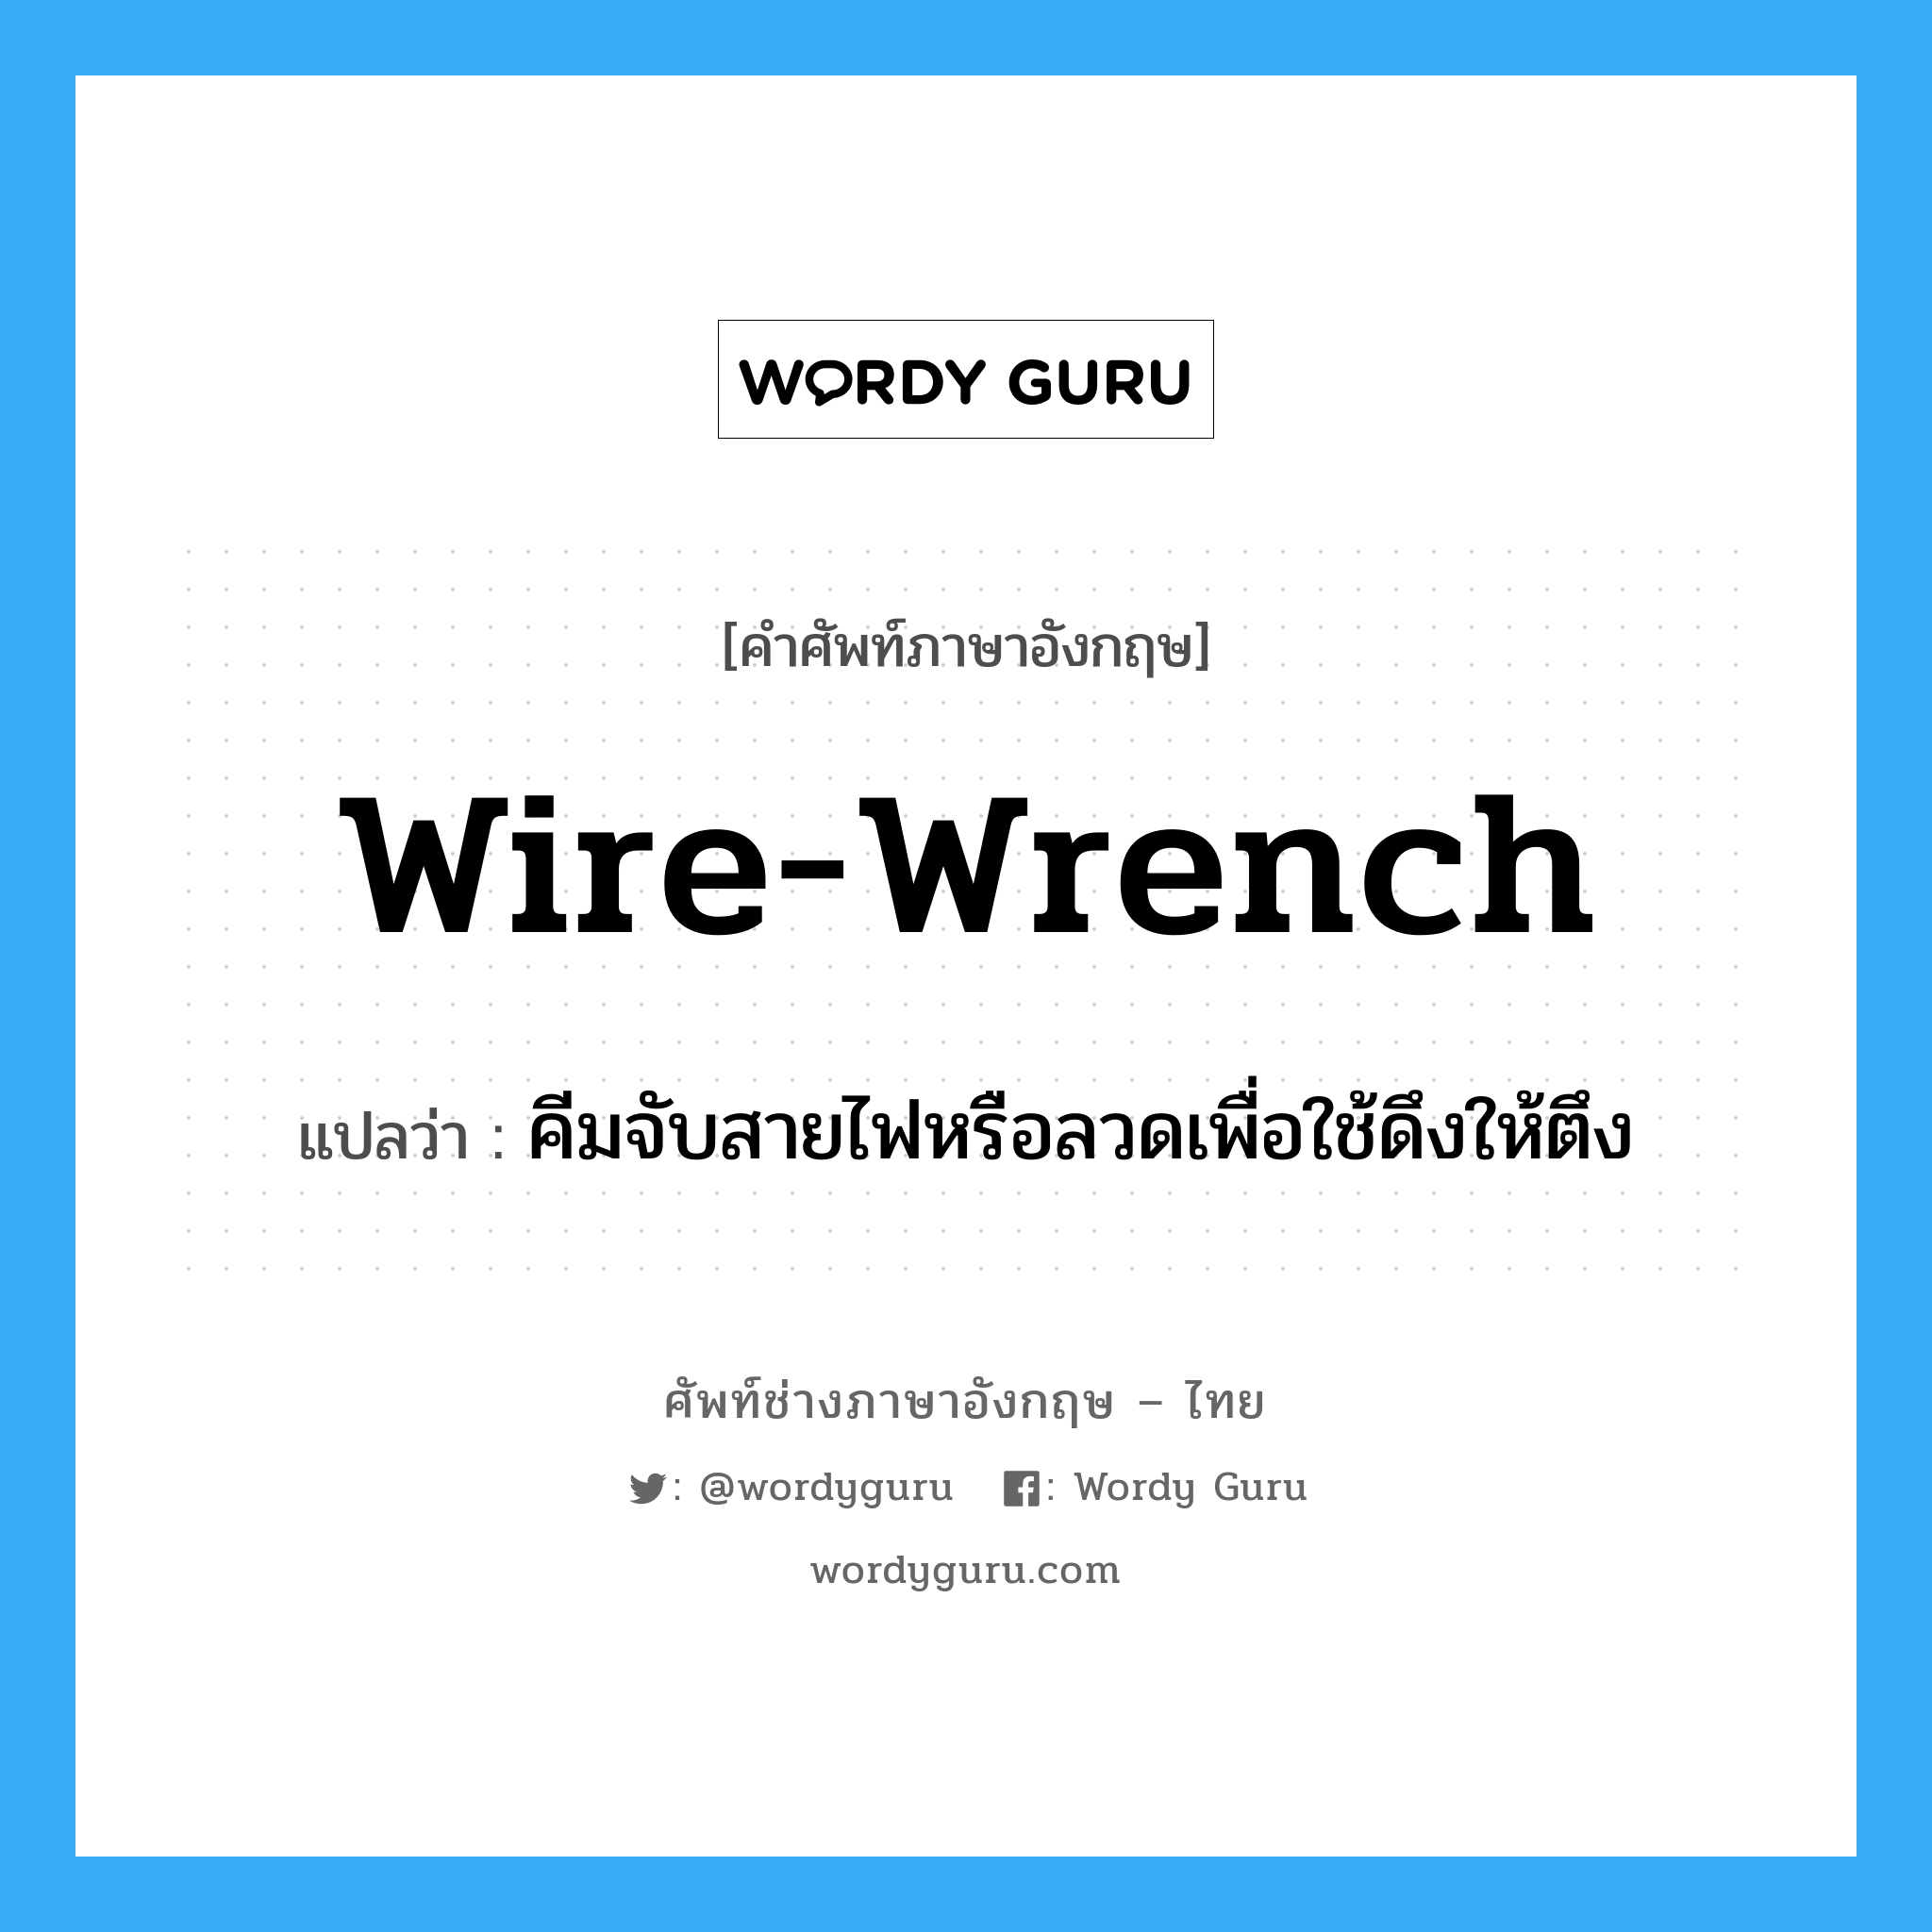 wire-wrench แปลว่า?, คำศัพท์ช่างภาษาอังกฤษ - ไทย wire-wrench คำศัพท์ภาษาอังกฤษ wire-wrench แปลว่า คีมจับสายไฟหรือลวดเพื่อใช้ดึงให้ตึง